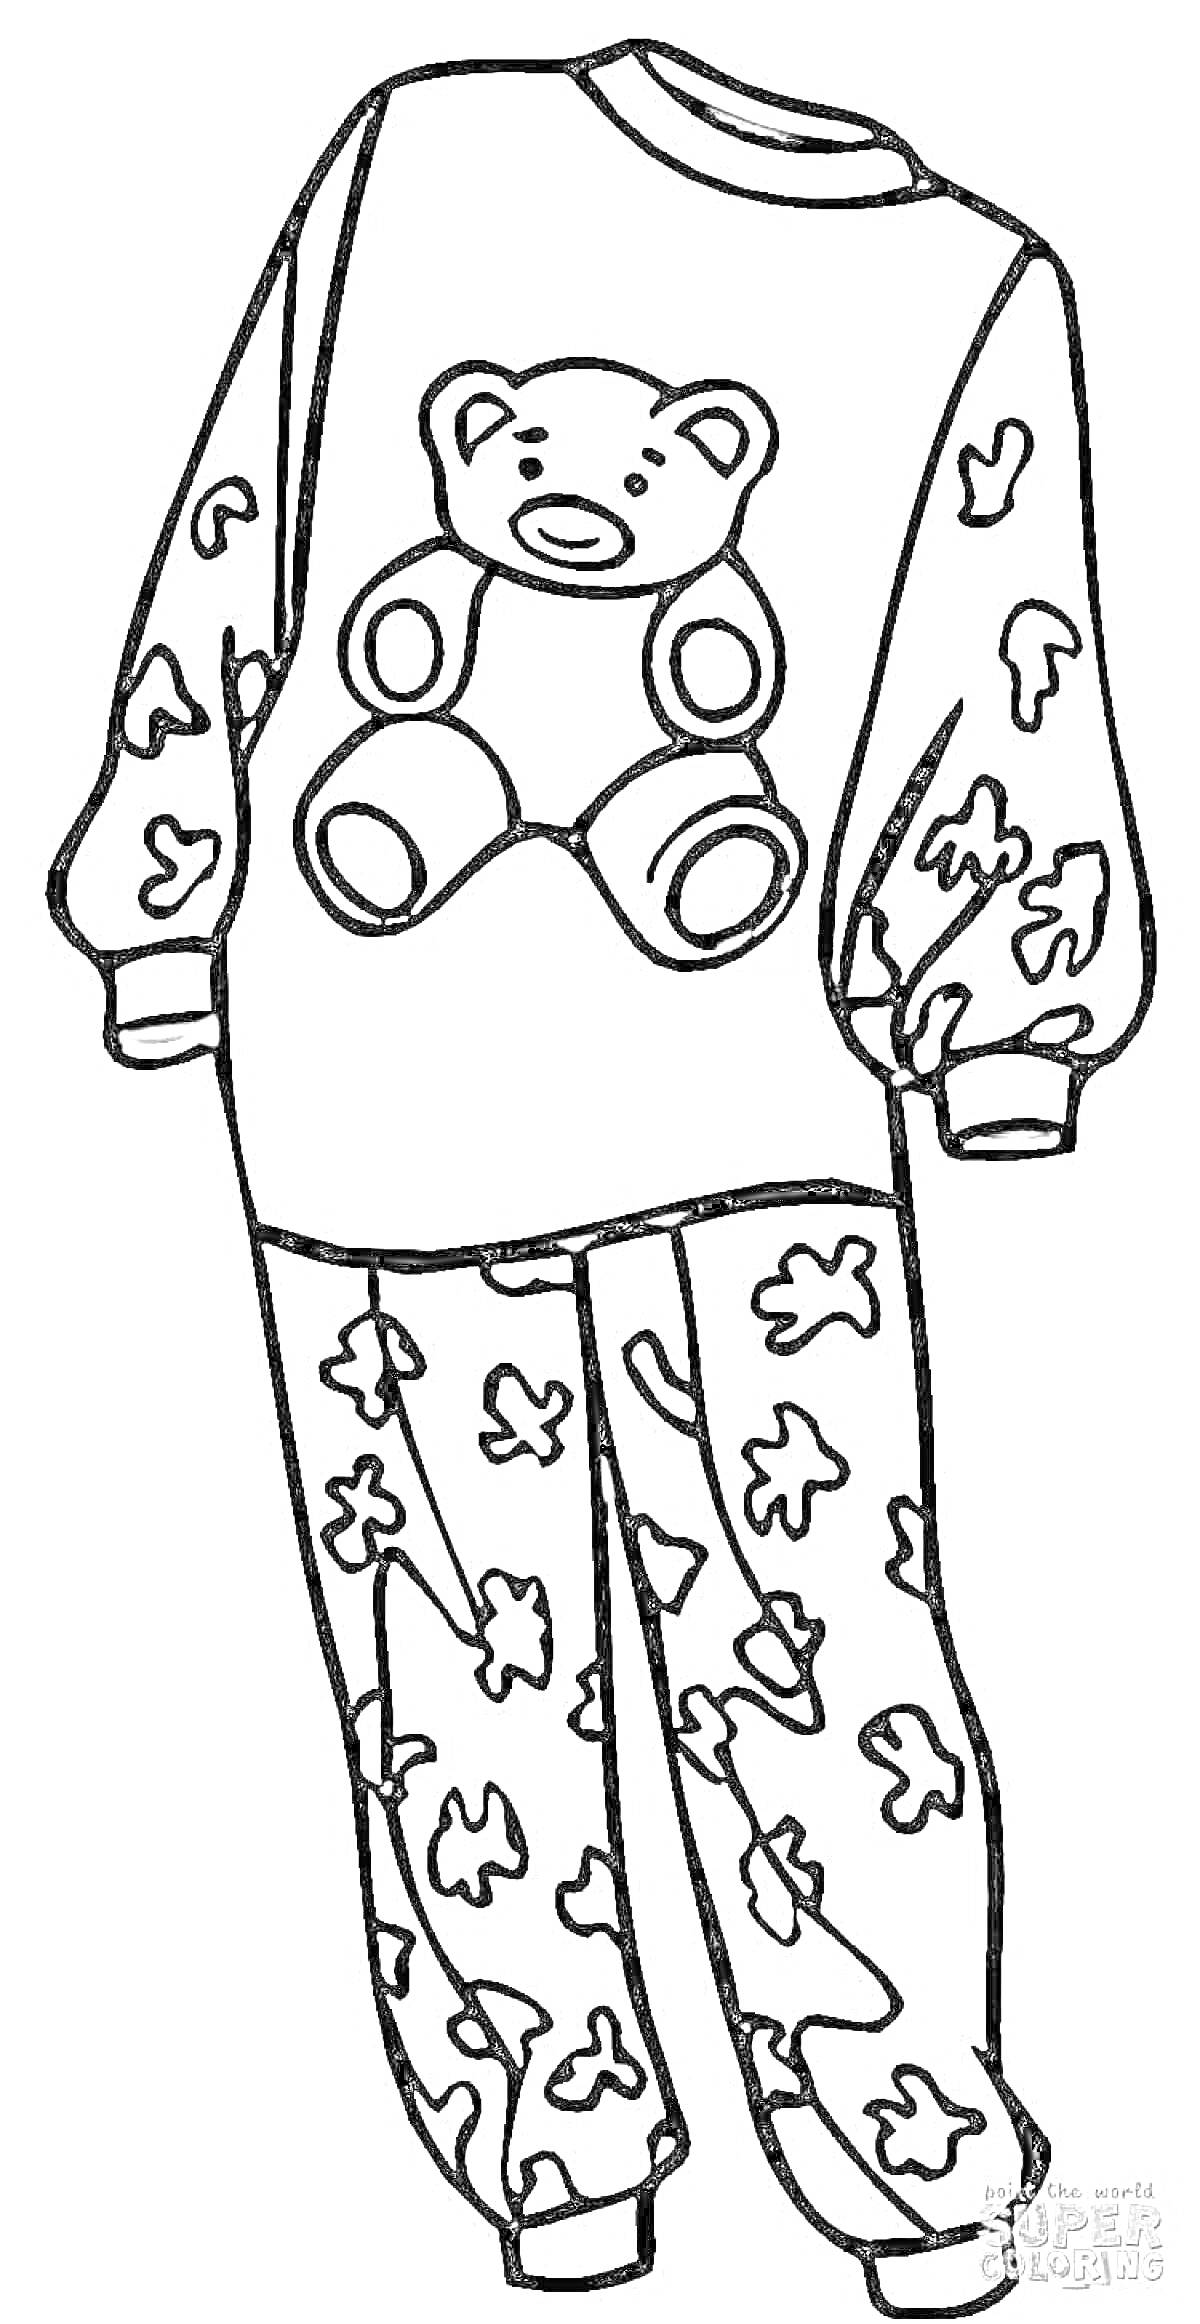 Раскраска Раскраска с изображением пижамы с медвежонком и рисунком листьев